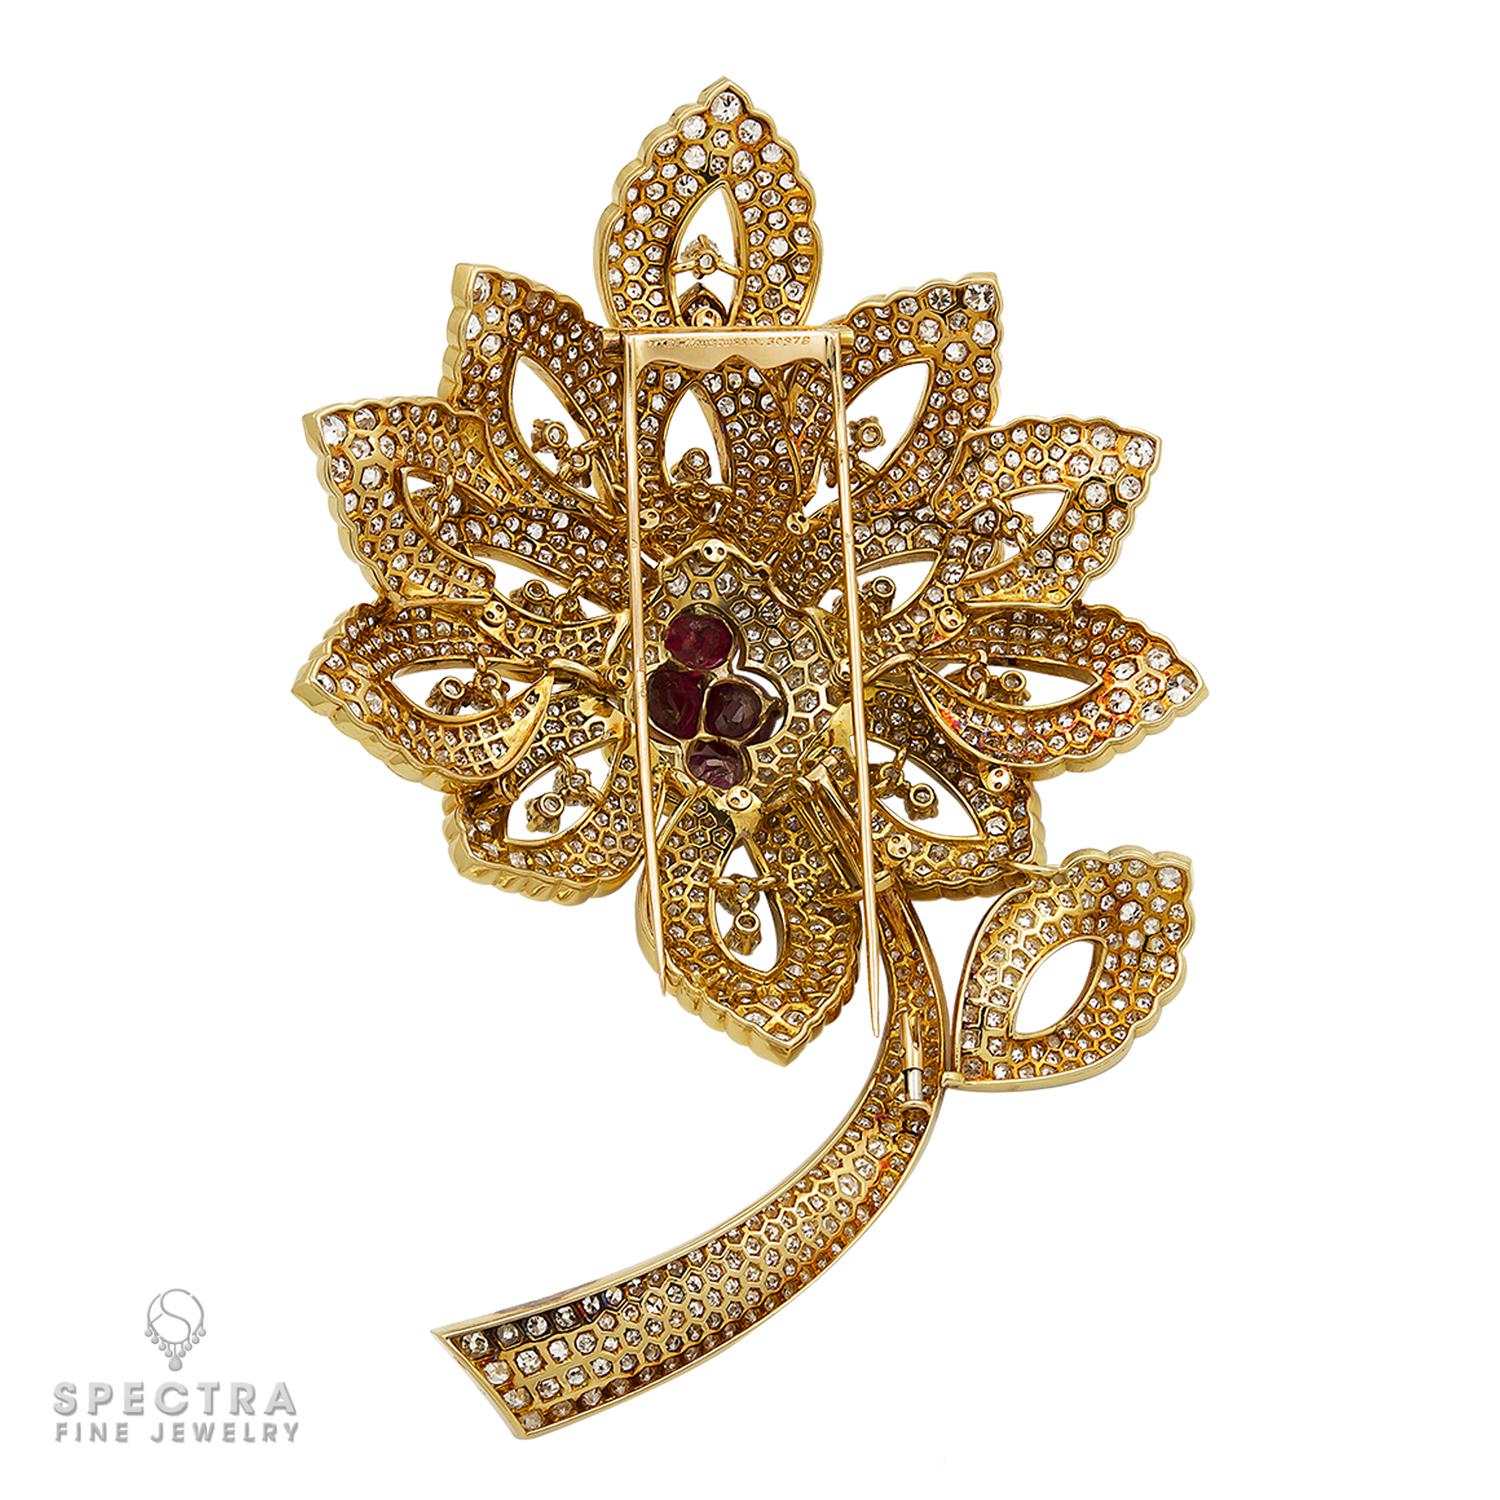 Die von Mauboussin signierte Diamant-Rubin-Blumen-Brosche ist ein exquisites Schmuckstück, das die Handwerkskunst und die Liebe zum Detail der Marke unter Beweis stellt. Diese Brosche ist ein wahres Meisterwerk, das die zeitlose Schönheit von